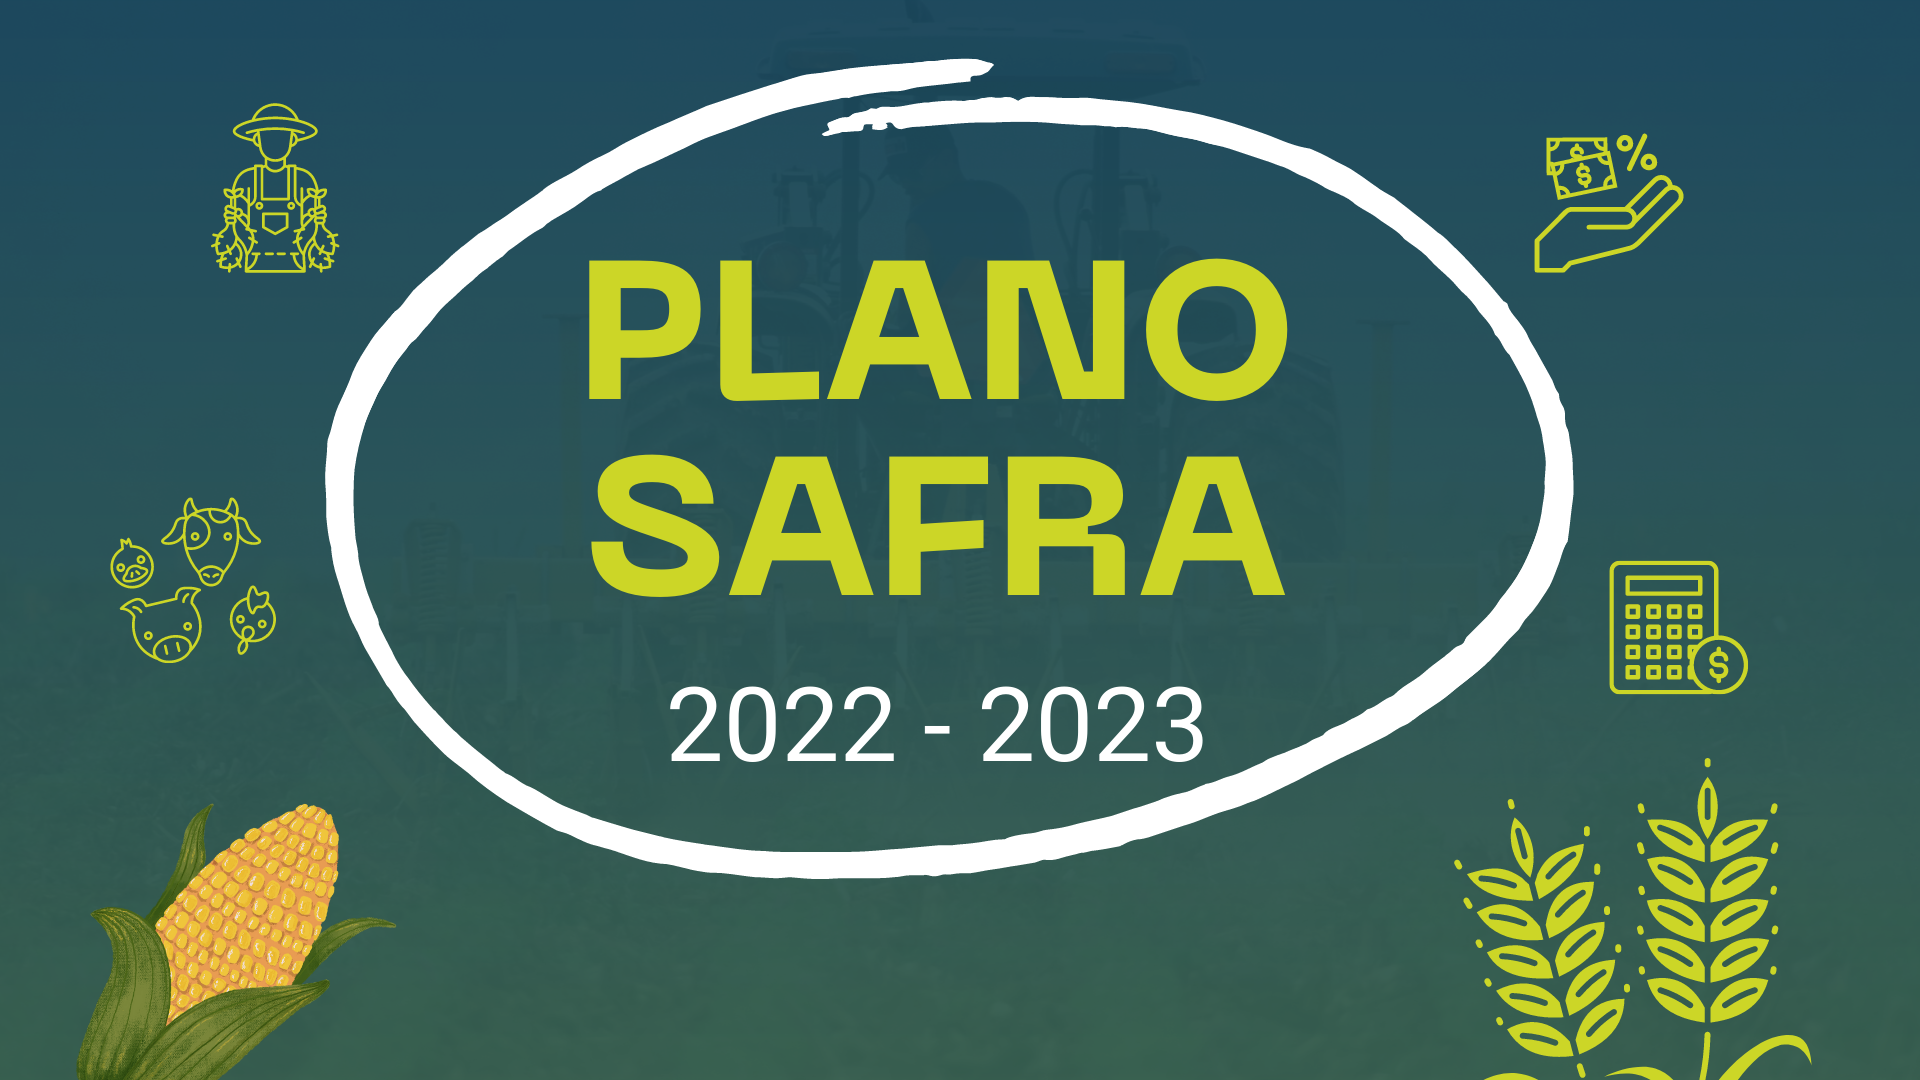 PLANO SAFRA 2023